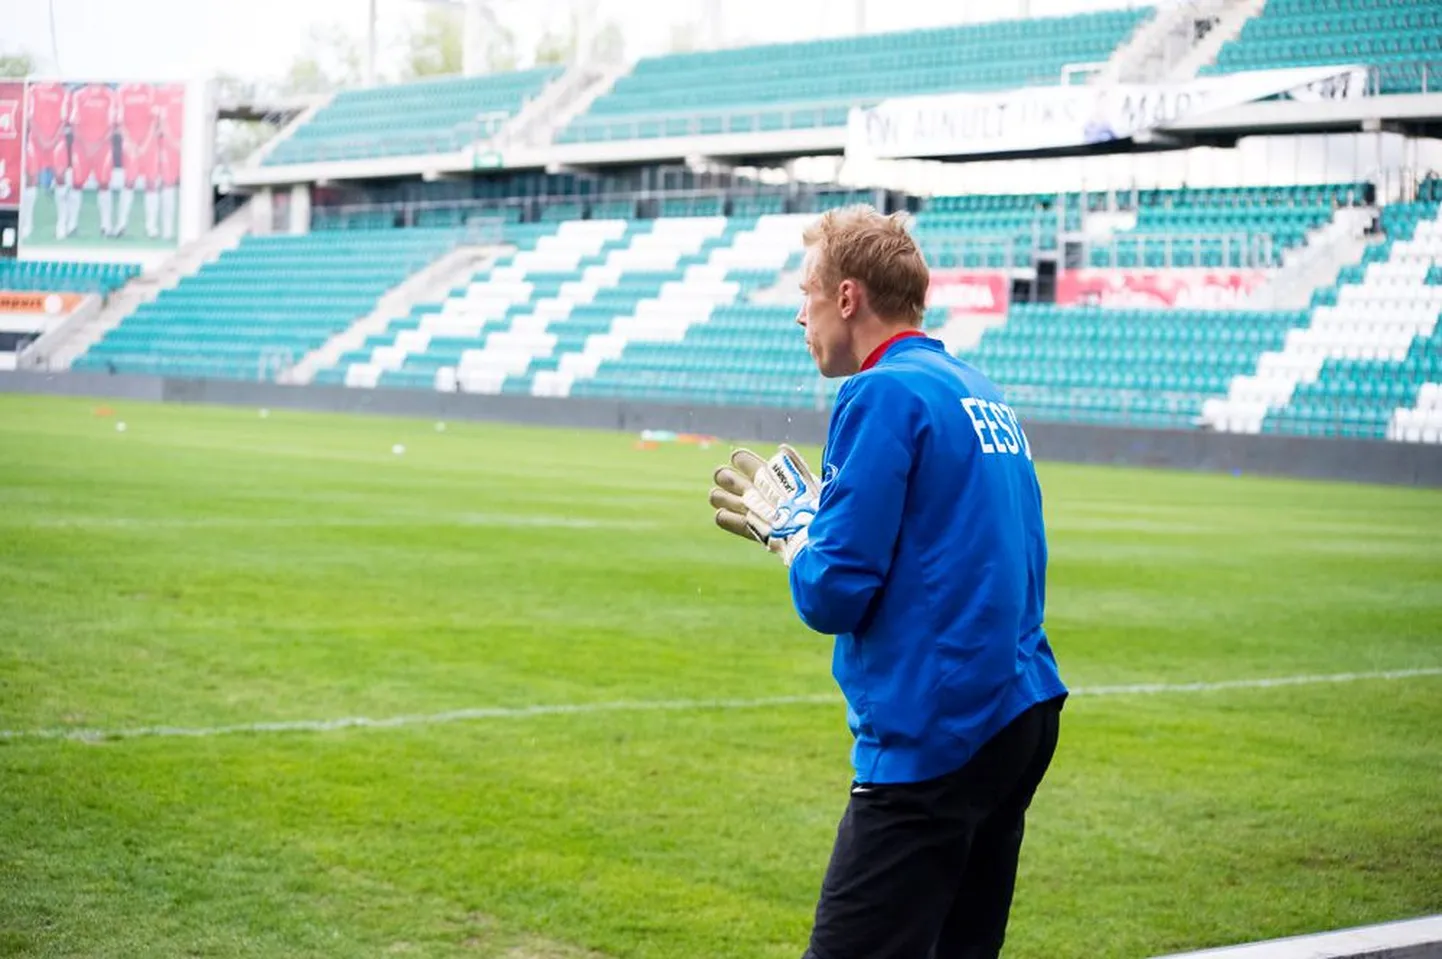 Eilne treening Lilleküla jalgpallistaadionil jäi Mart Poomil koondise rivistuses mängijana karjääri viimaseks.